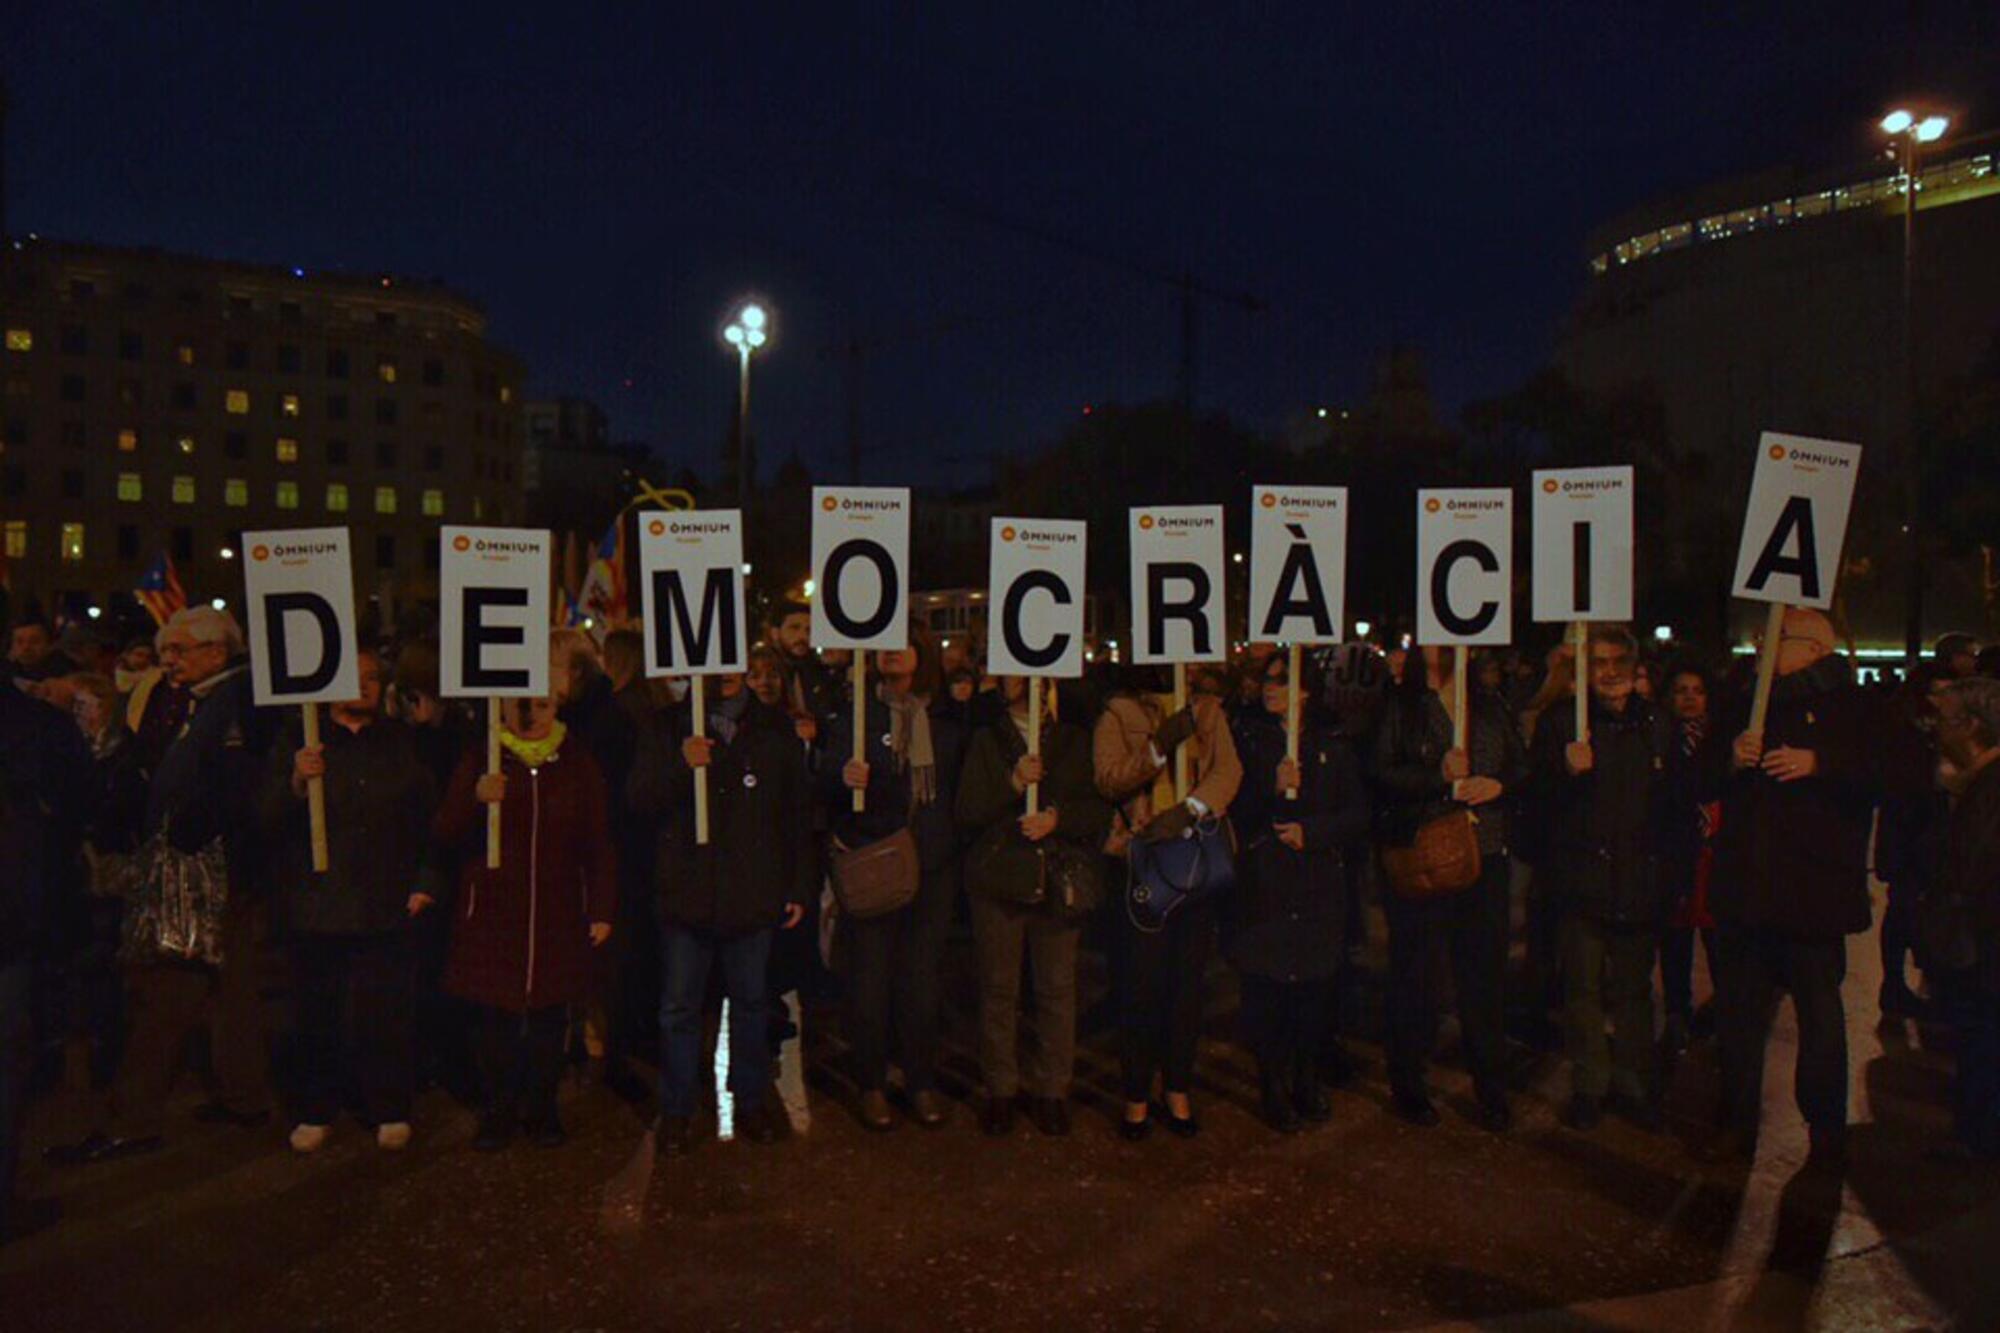 Barcelona Proces Democracia